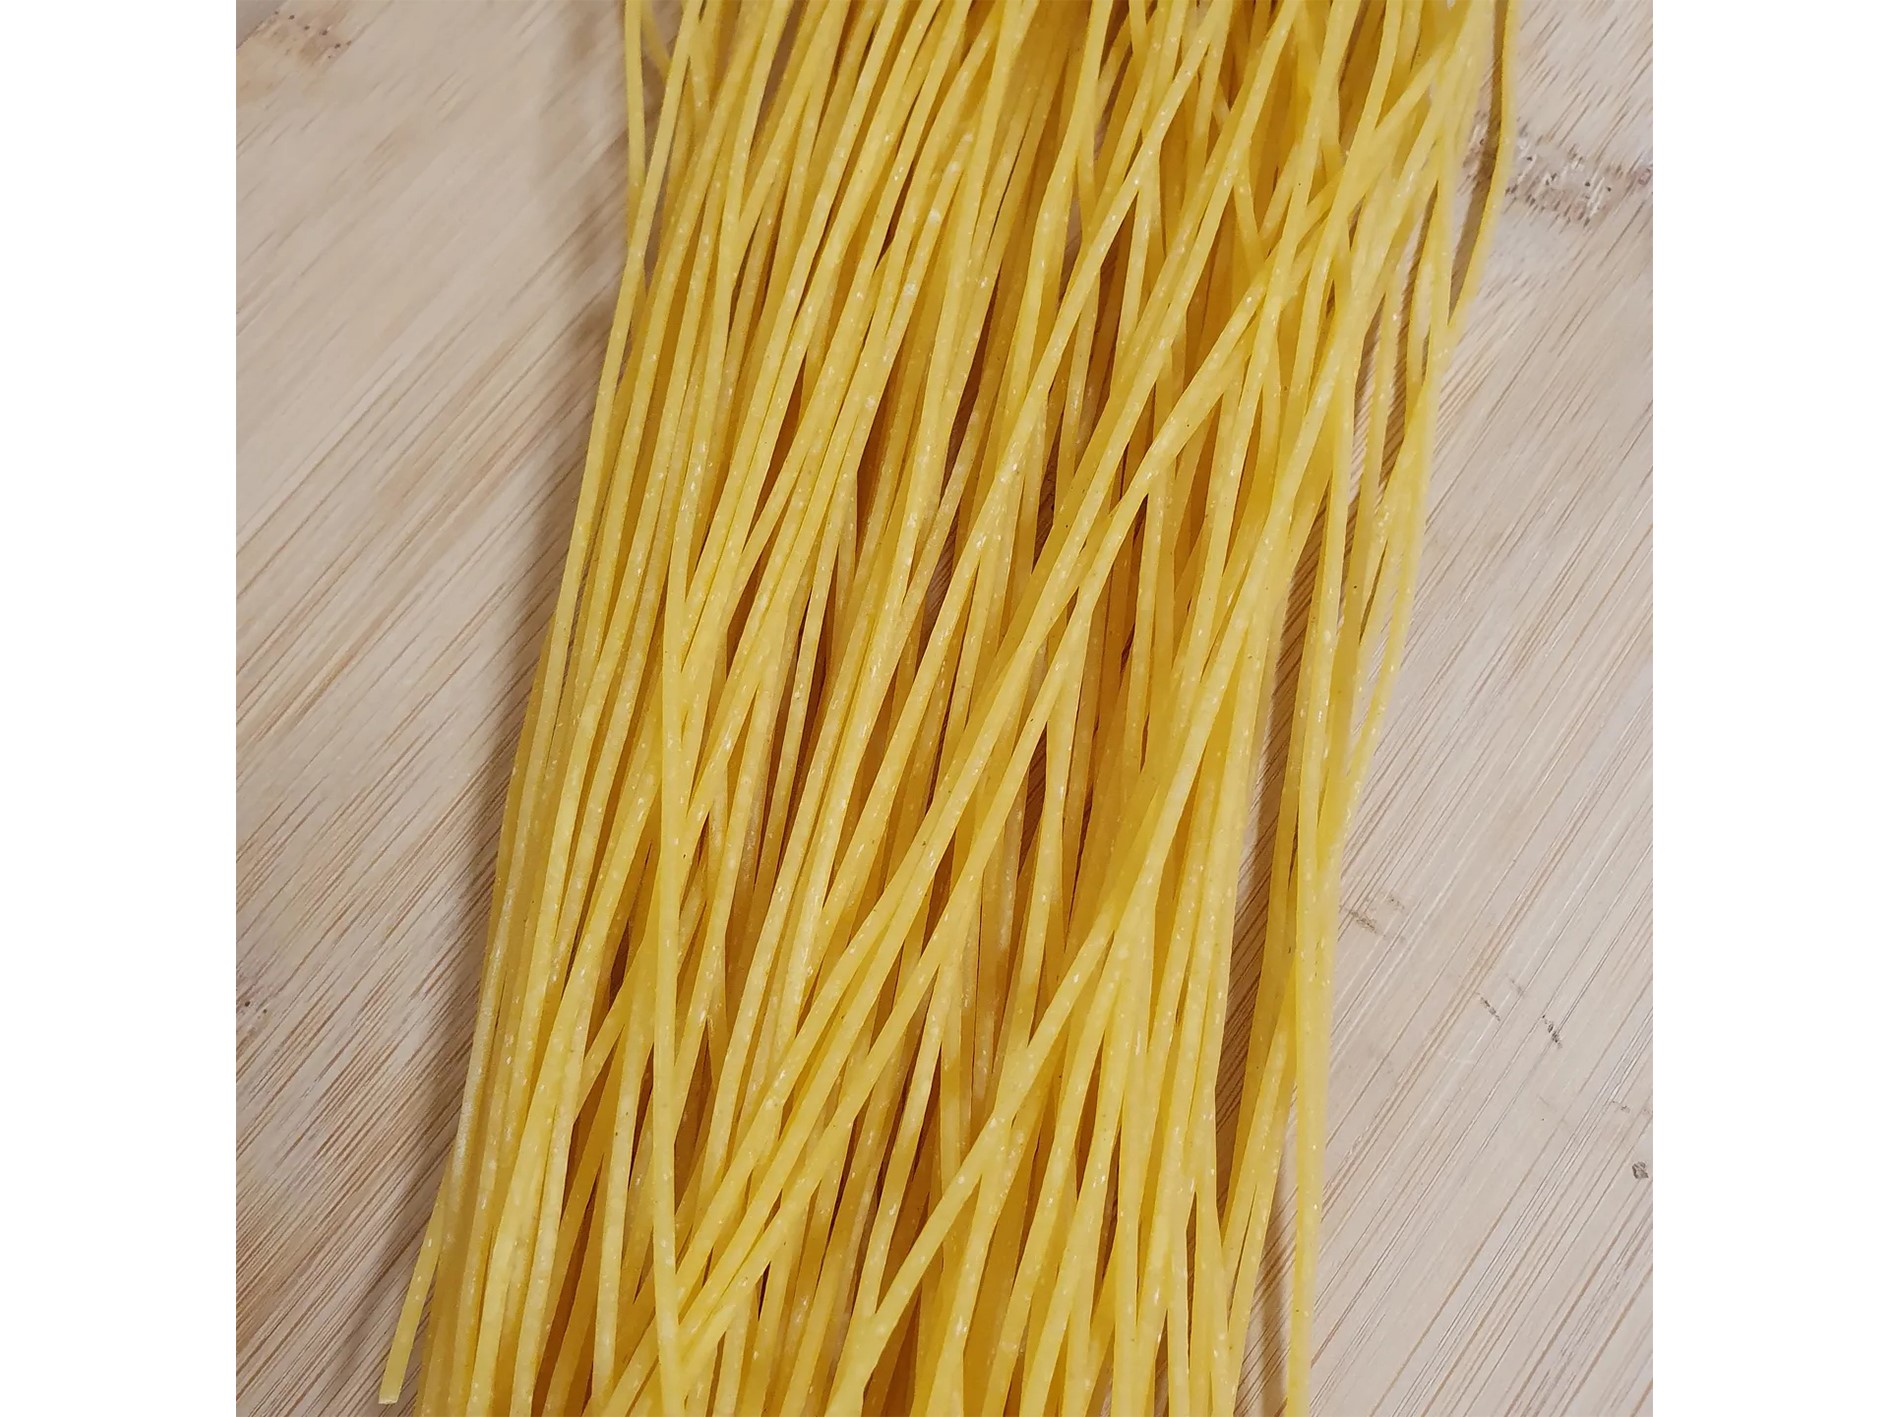 Weizen Spaghetti | 500 g